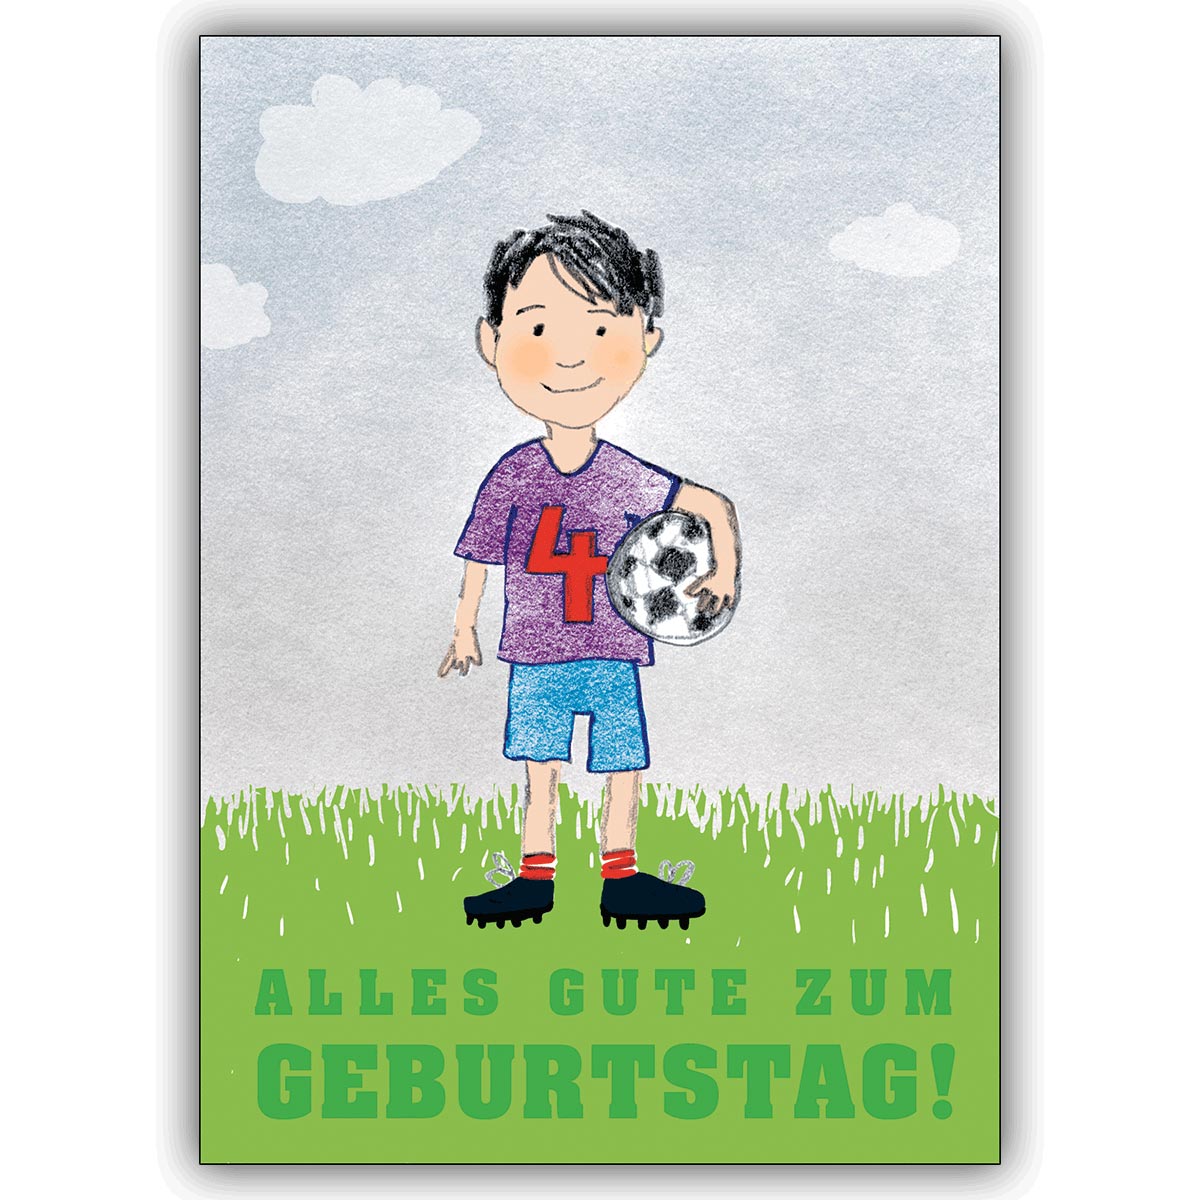 Freche Grusskarte zum 4. Geburtstag mit kleinem Fußballer: Alles Gute zum Geburtstag!